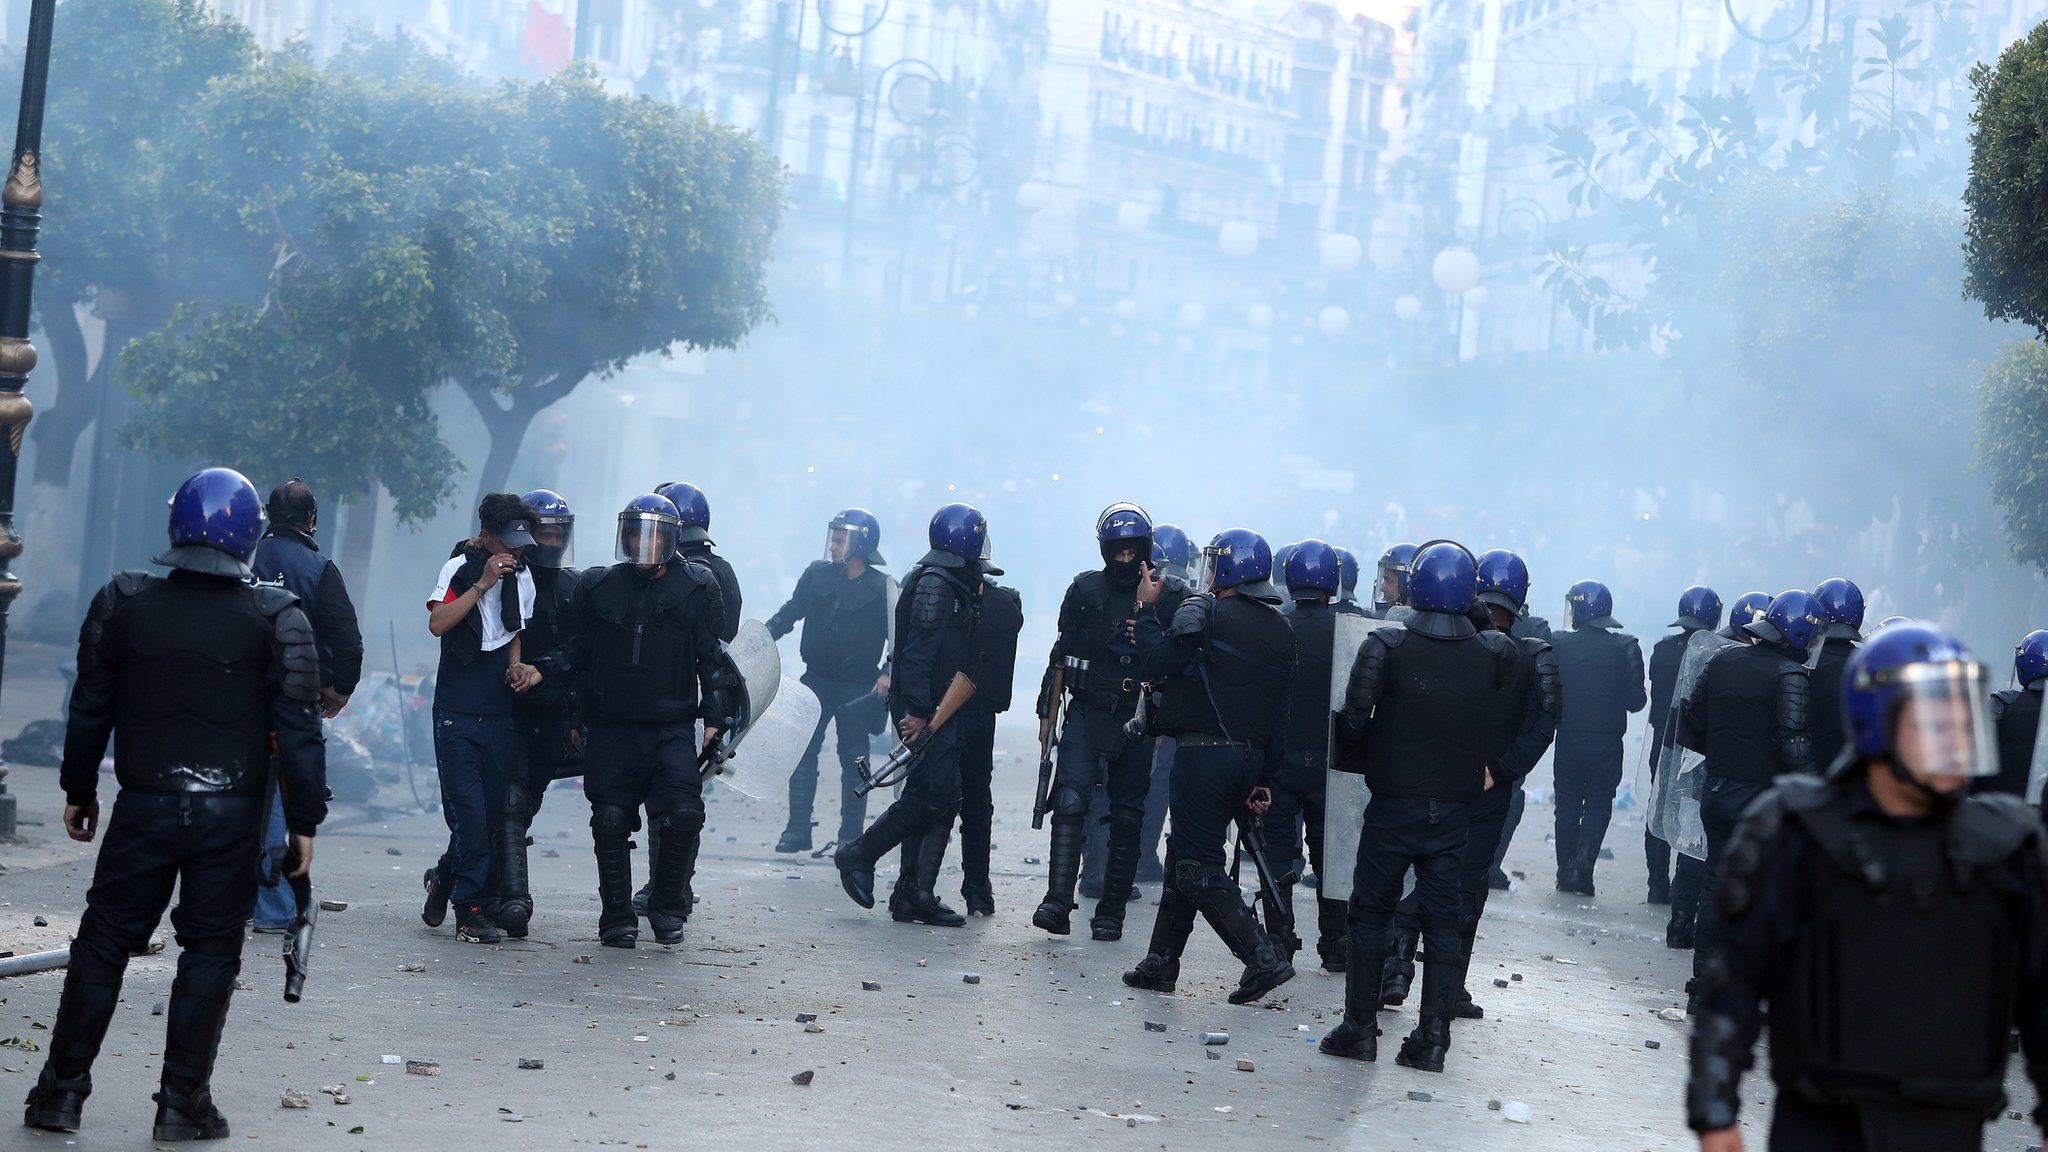 Demonstrators clash with police in Algeria, April 2019